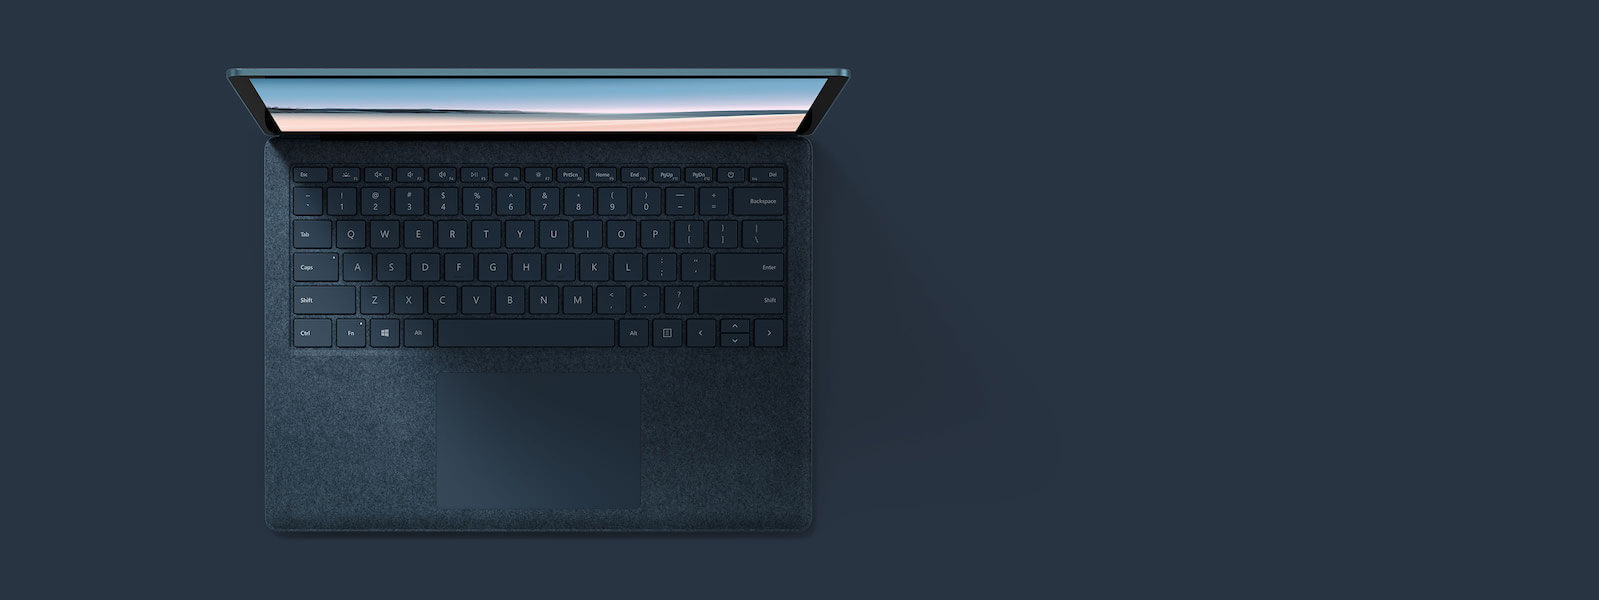 灰钴蓝 13.5 英寸 Surface Laptop 3 俯视图